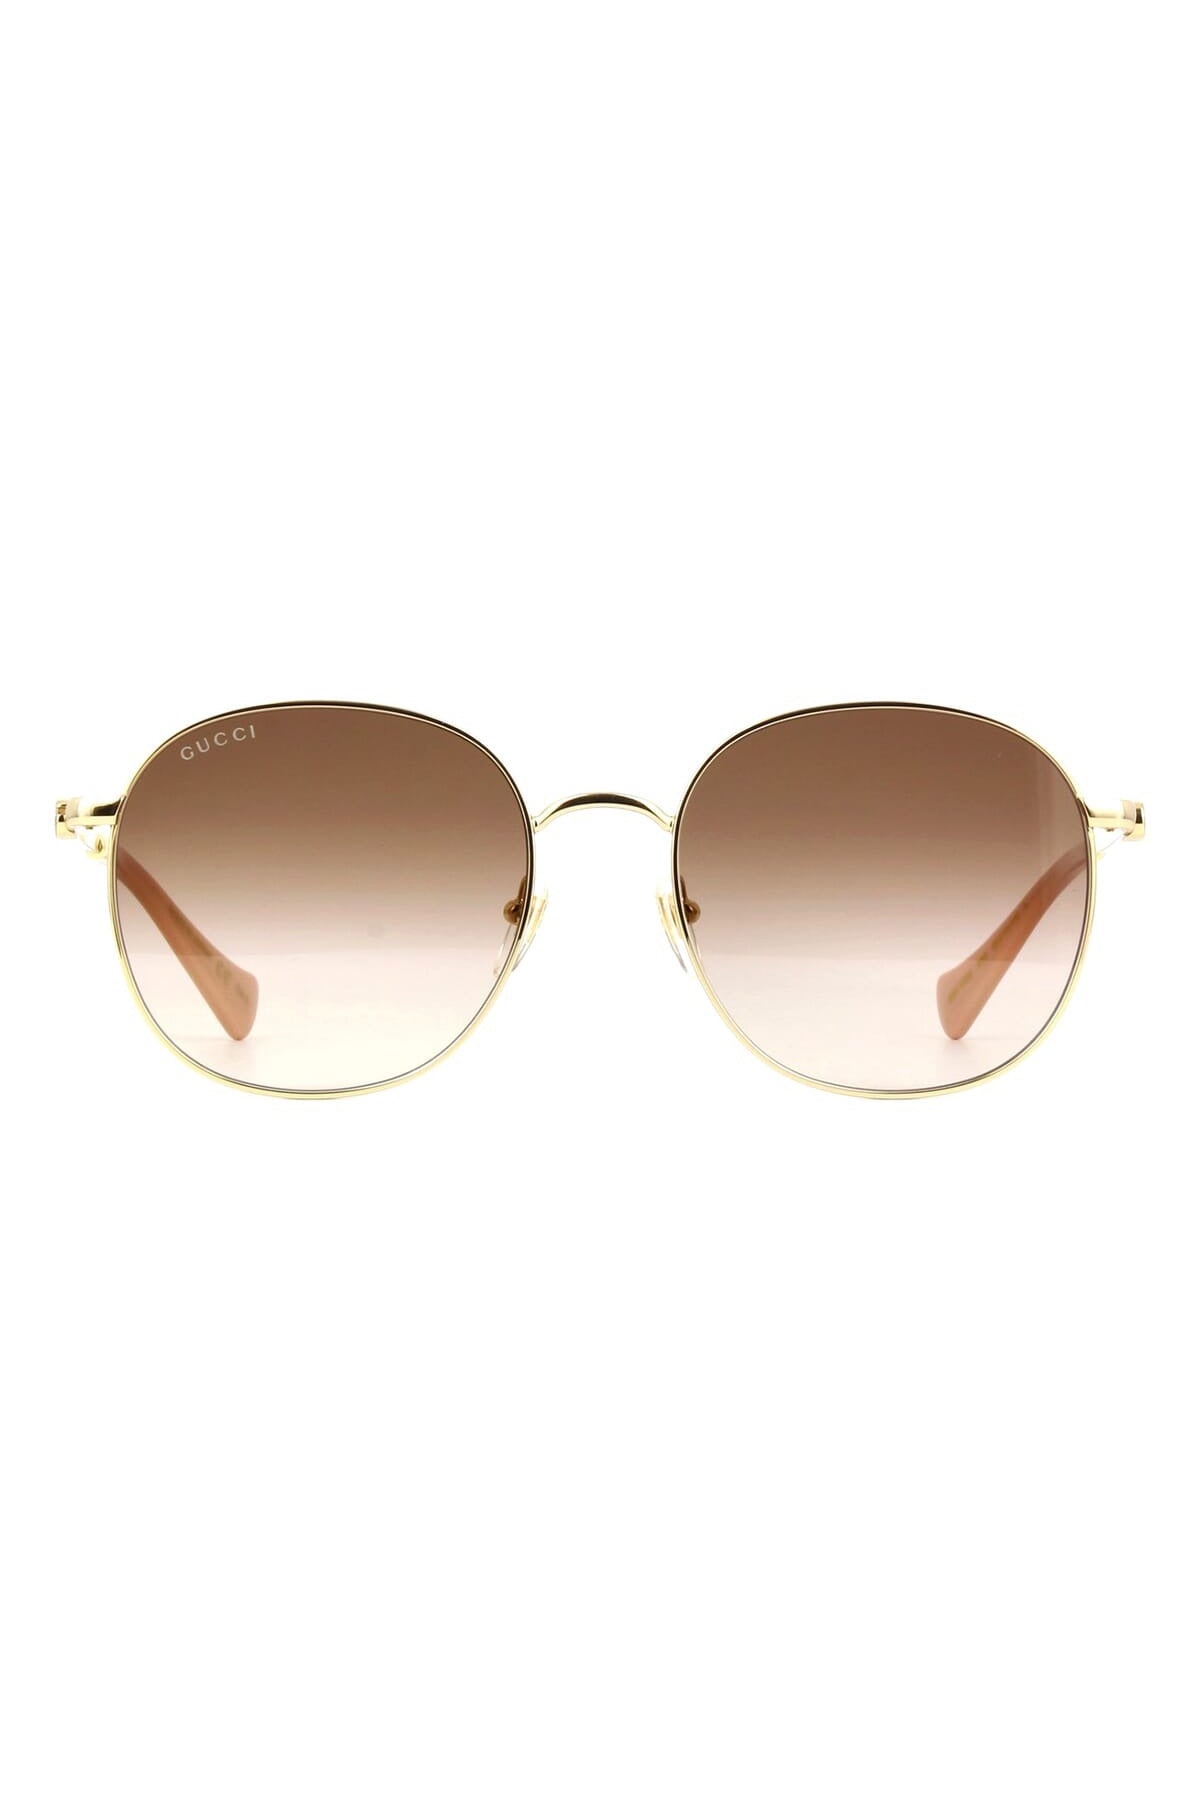 GUCCI-Gradiant Round Sunglasses-GOLD